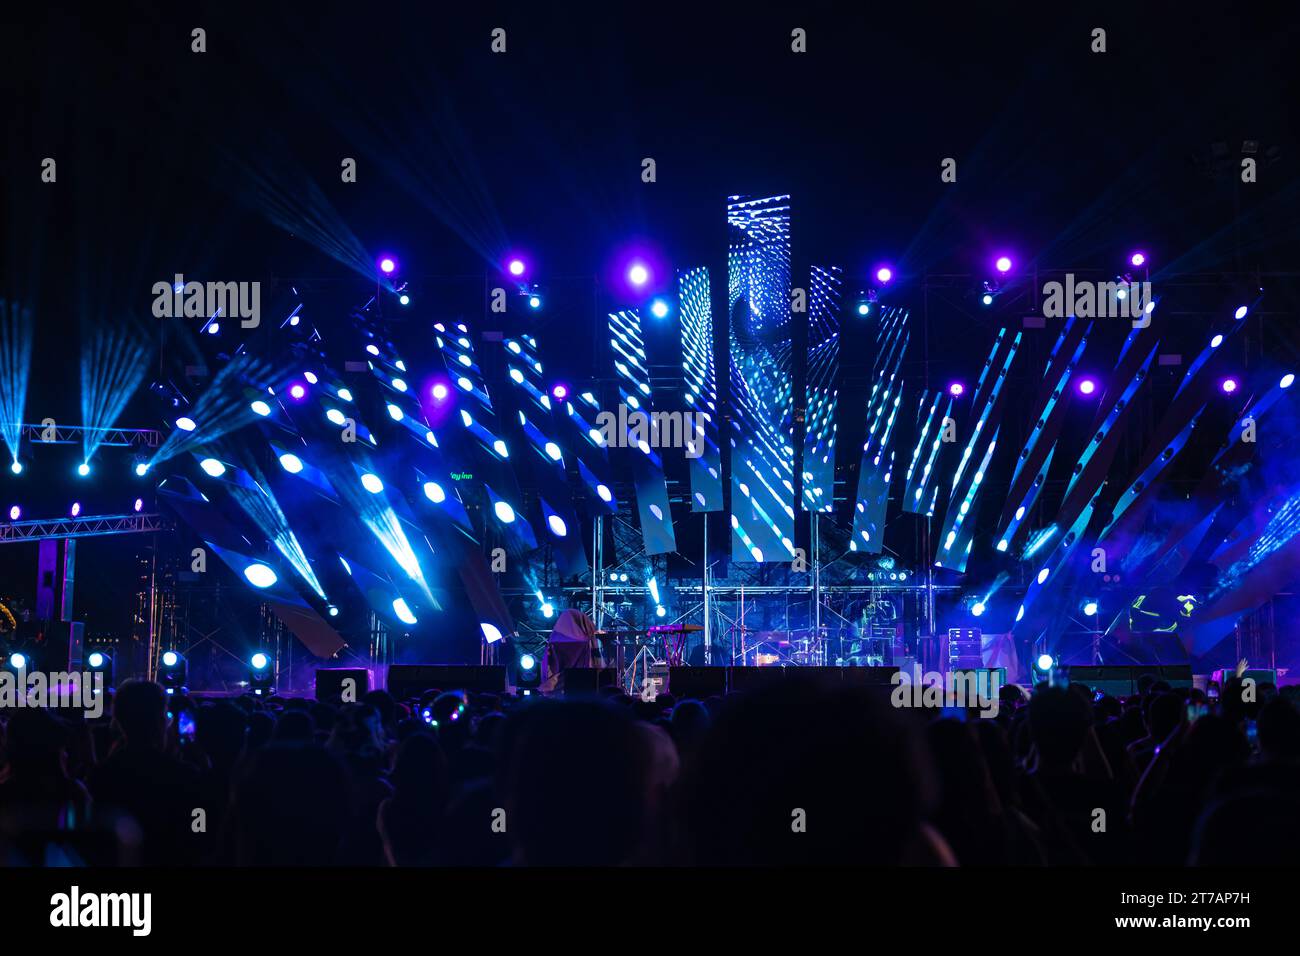 La nuit s’anime lors d’un festival de concert avec une foule jubilante devant les brillamment illuminés Banque D'Images